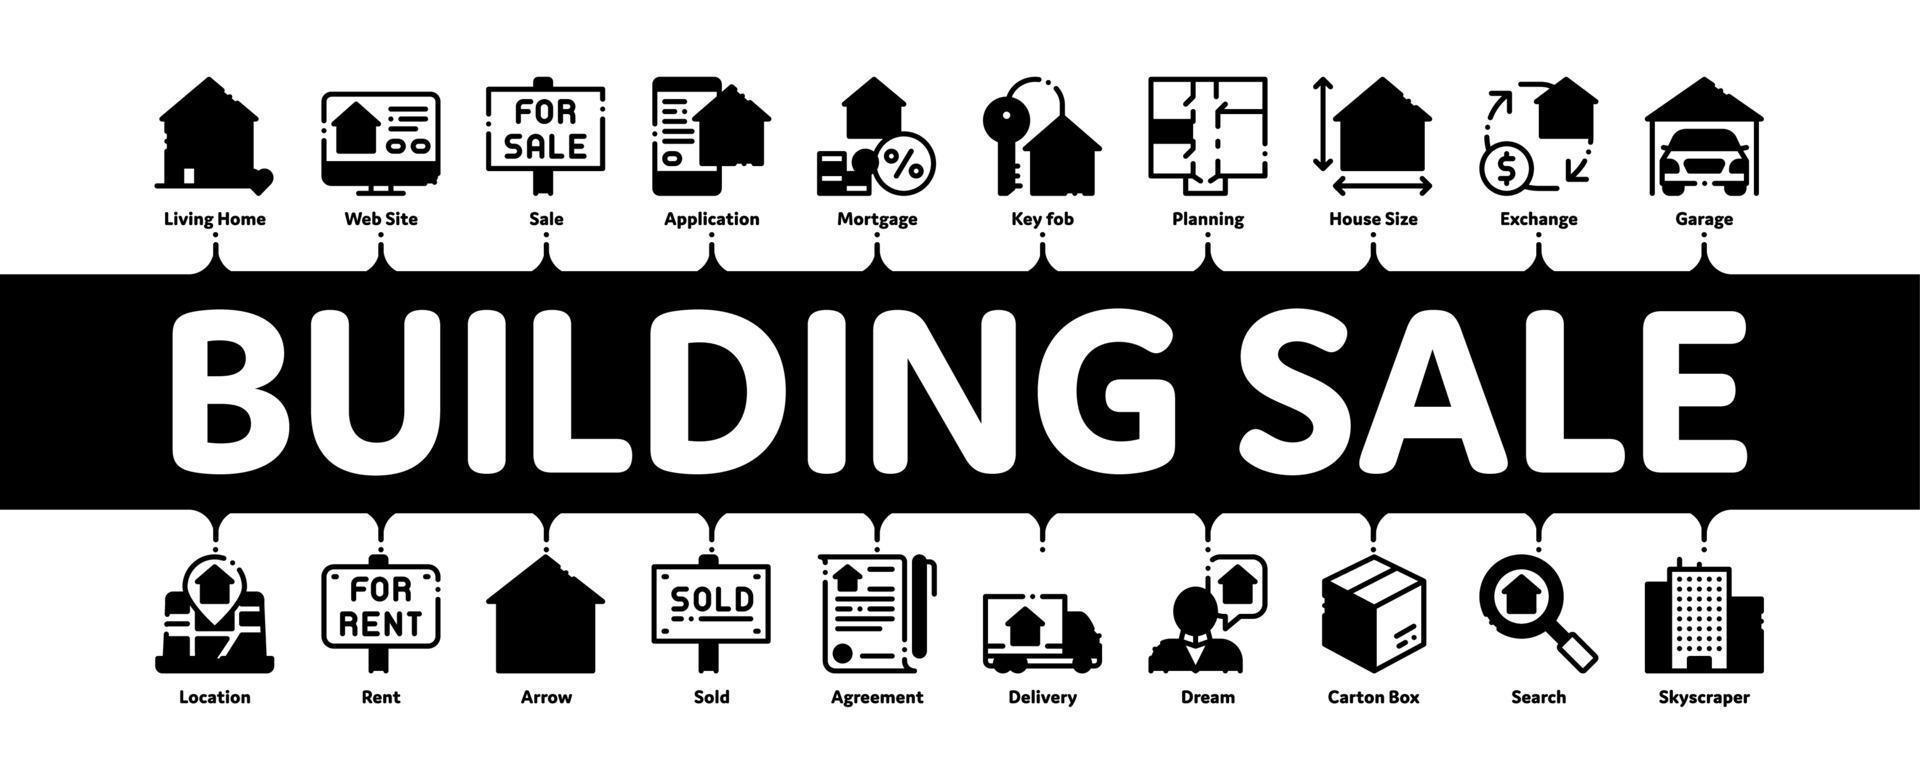 vetor de banner infográfico mínimo de venda de casa de construção